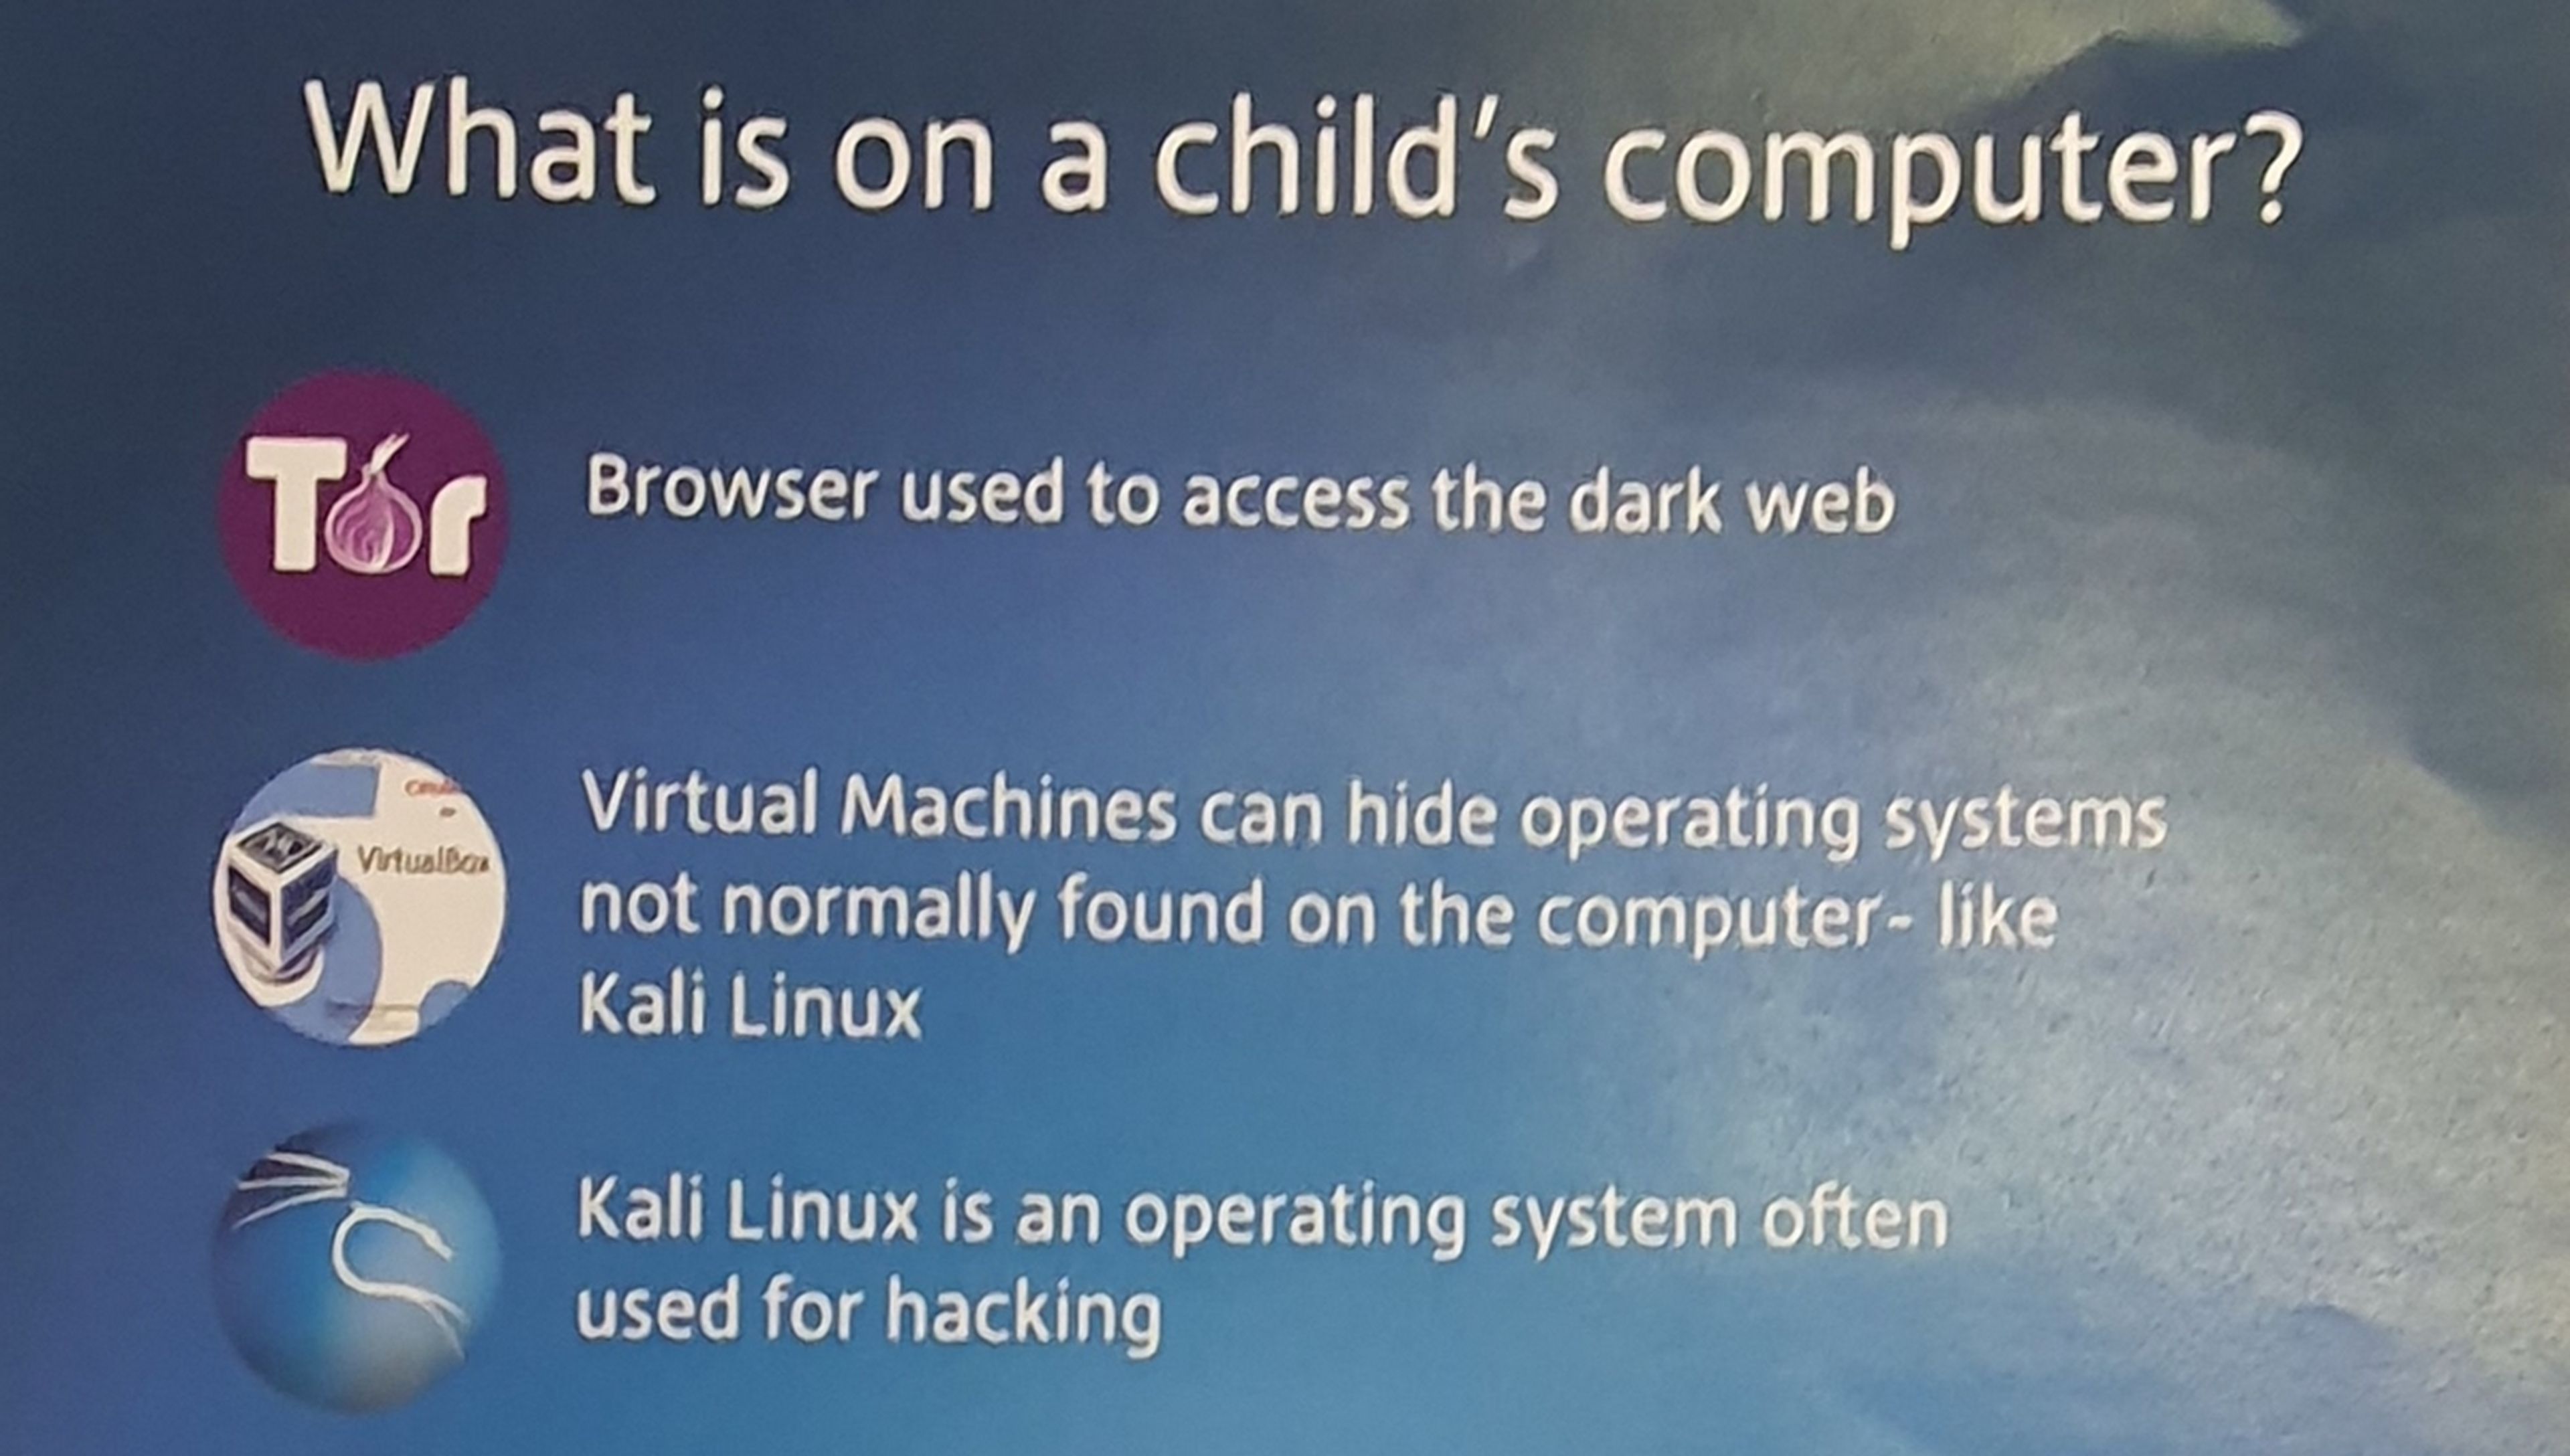 Si tu hijo usa Discord, Kali Linux o una máquina virtual, llama inmediatamente a la policía británica